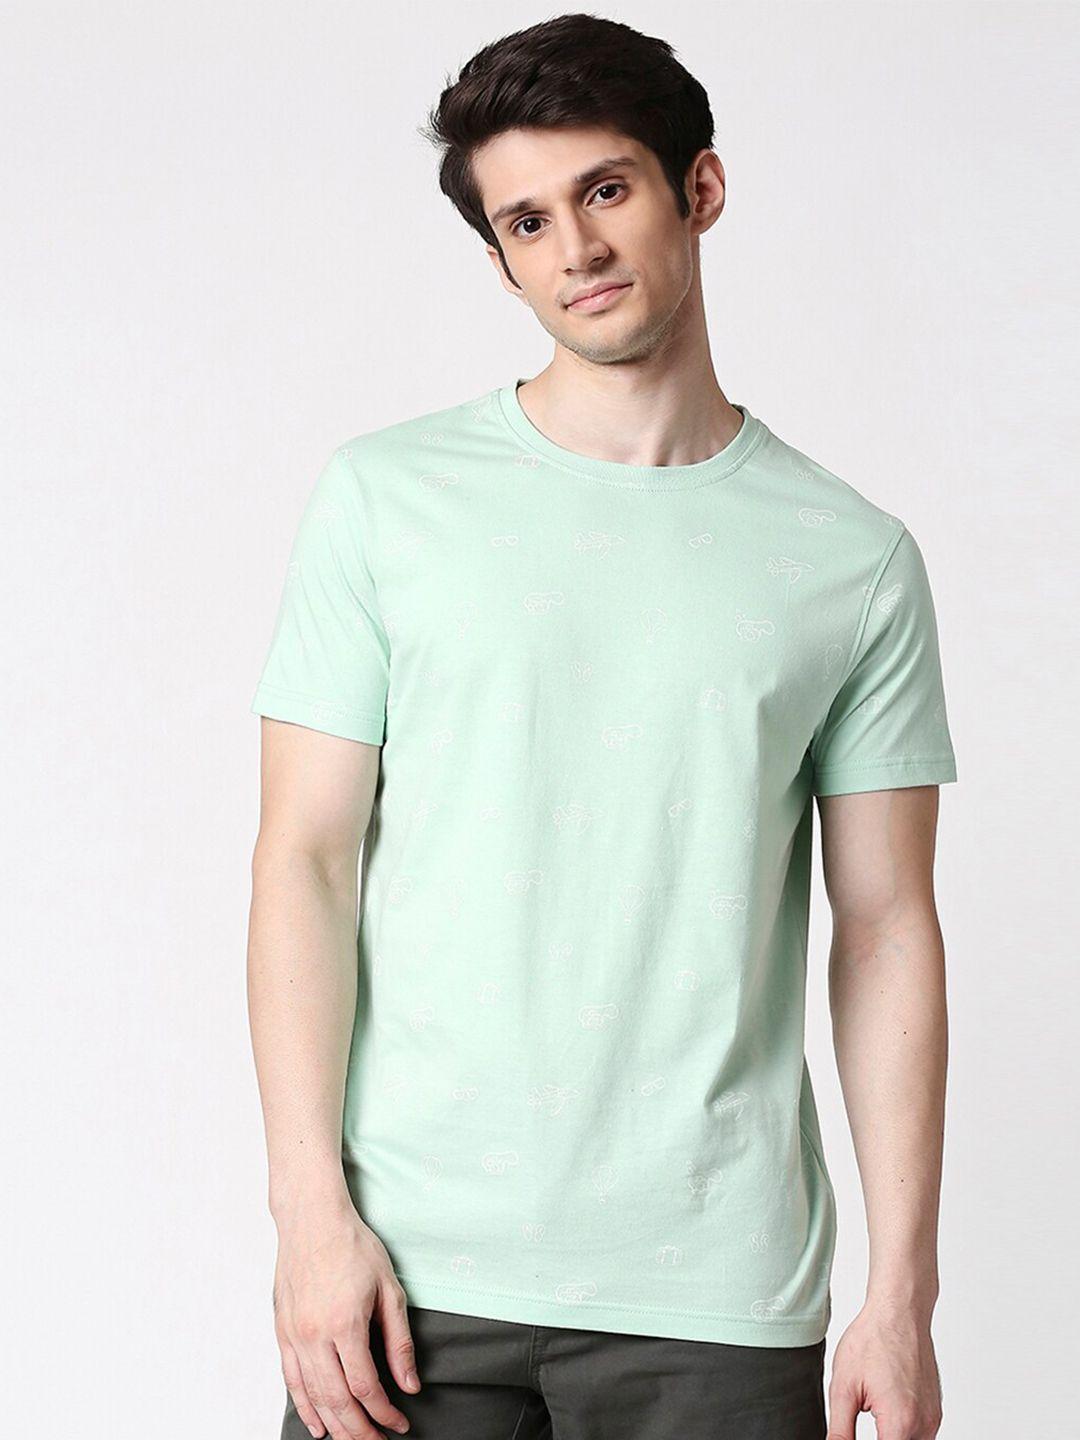 bewakoof-men-green-t-shirt